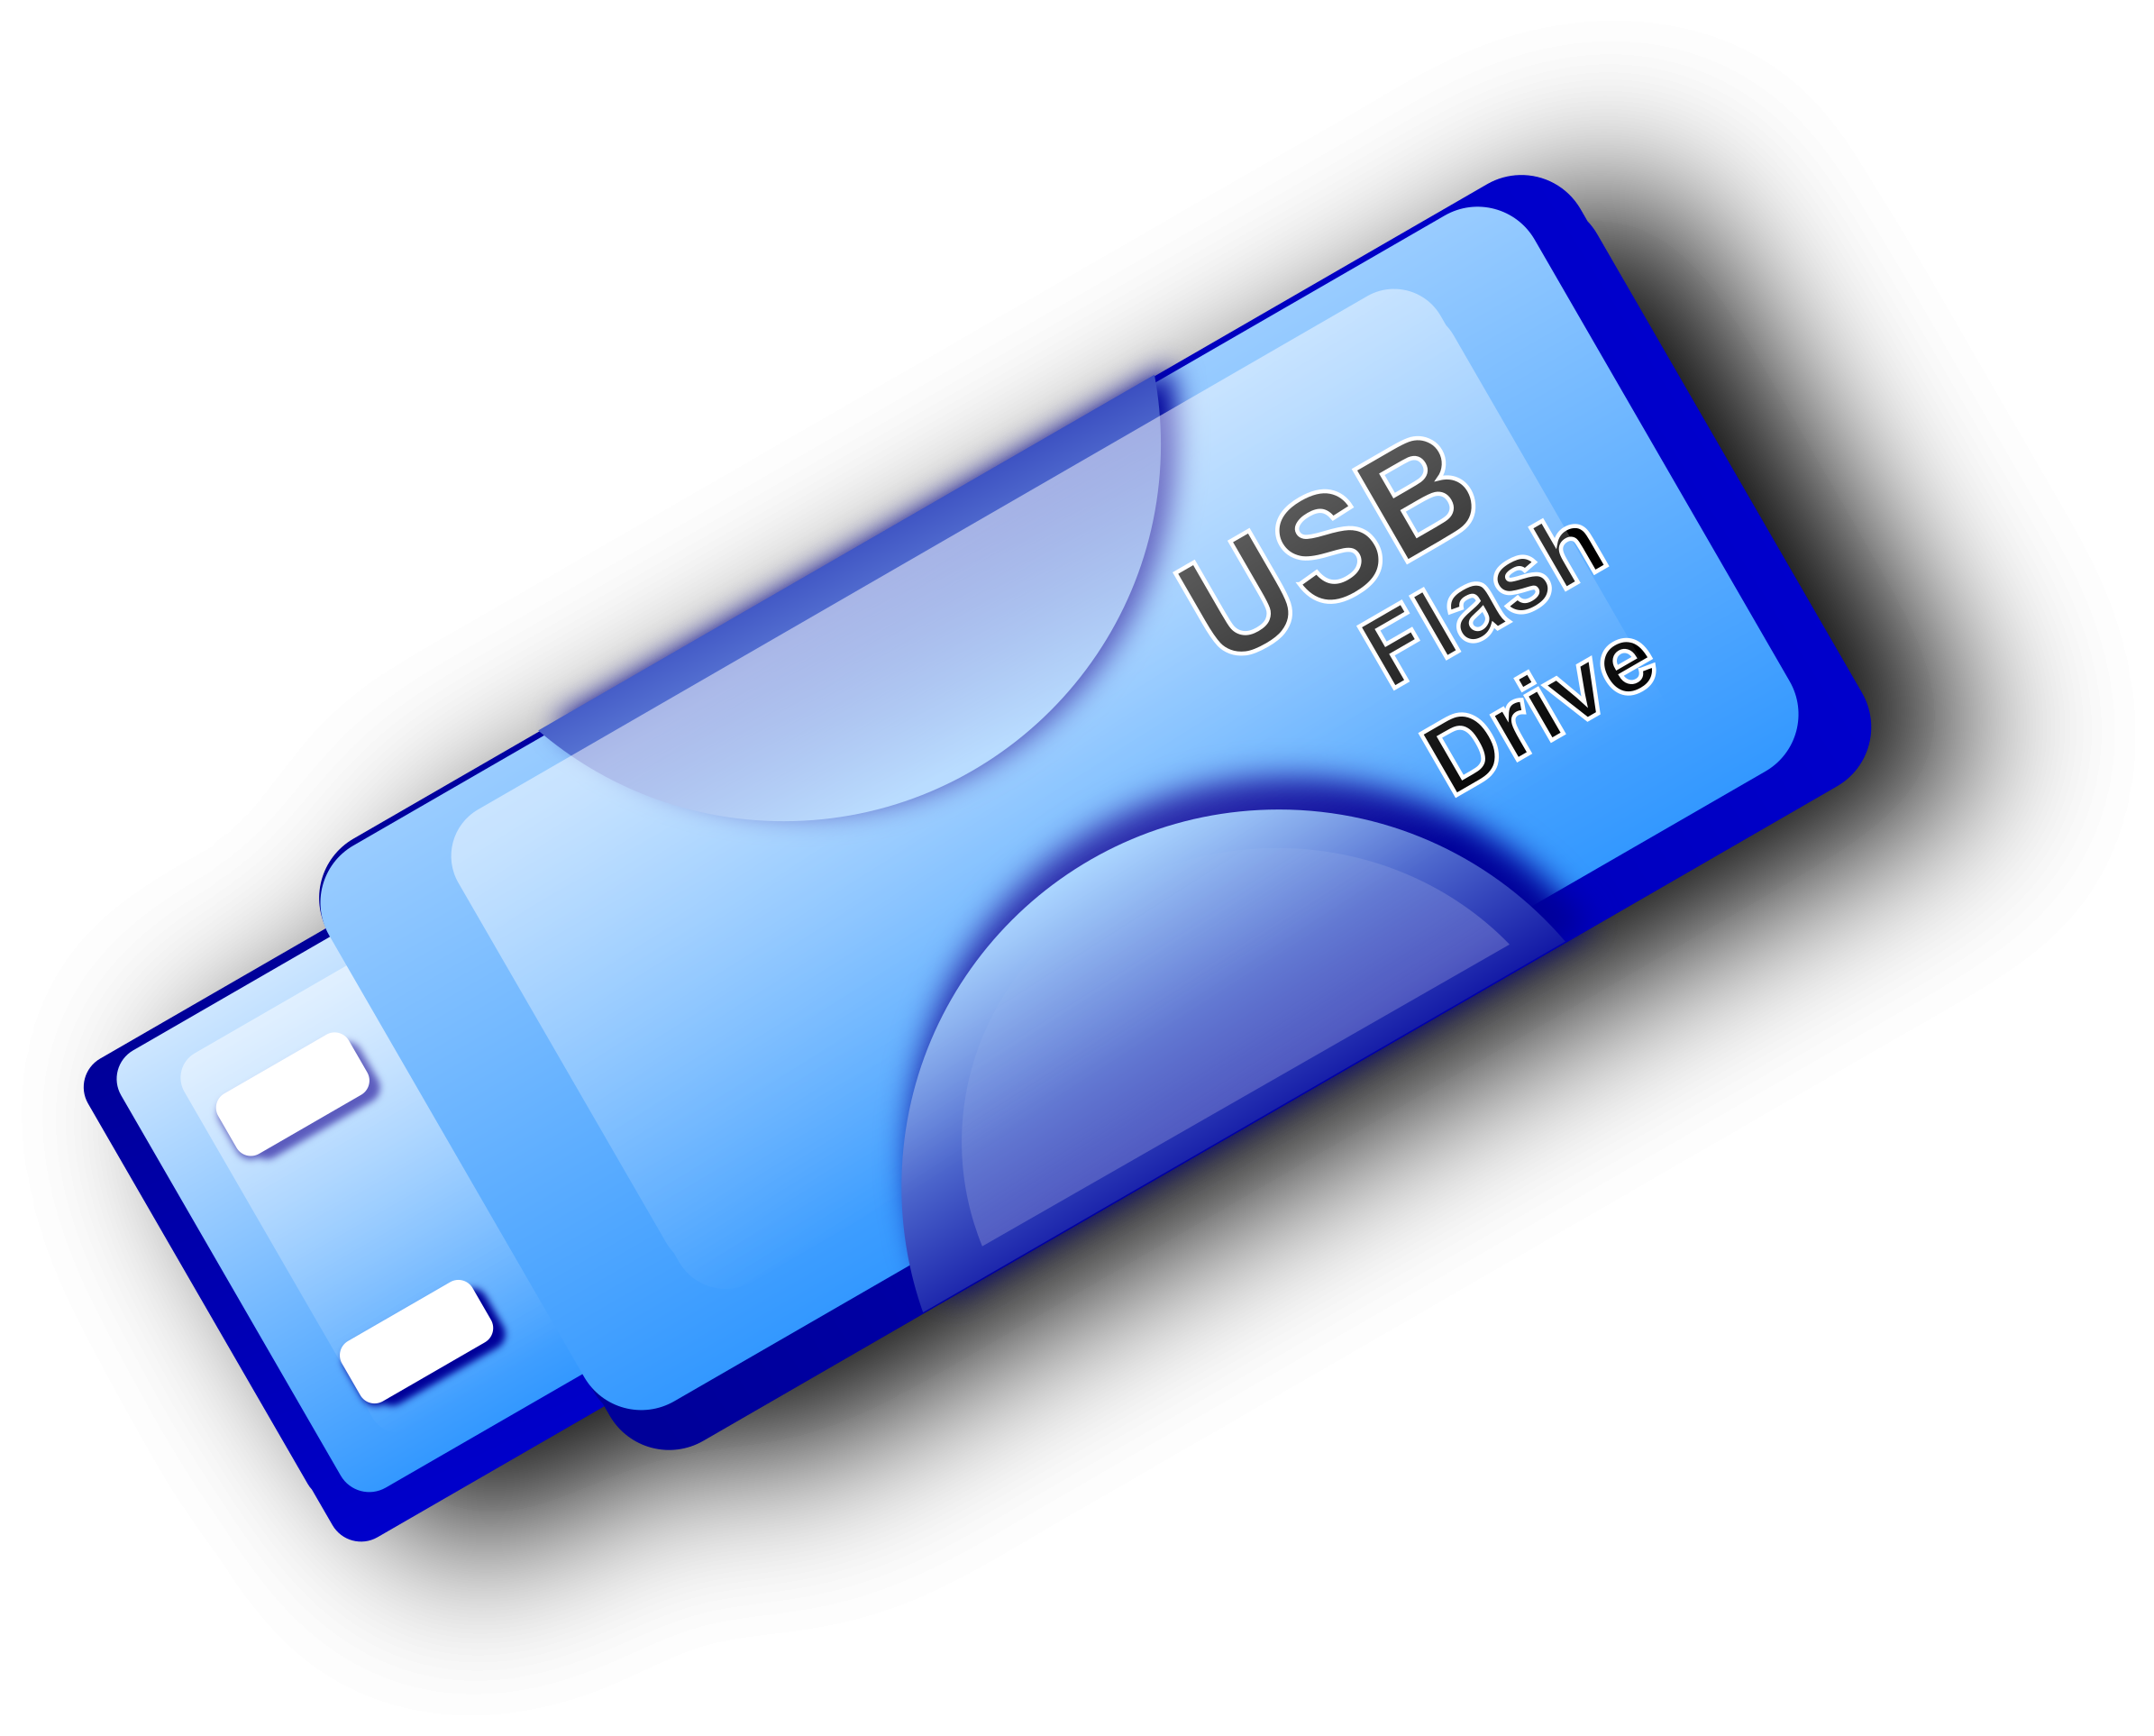 Флеш память носитель. Флешка. USB накопитель. Флешка на прозрачном фоне. Прозрачная флешка.